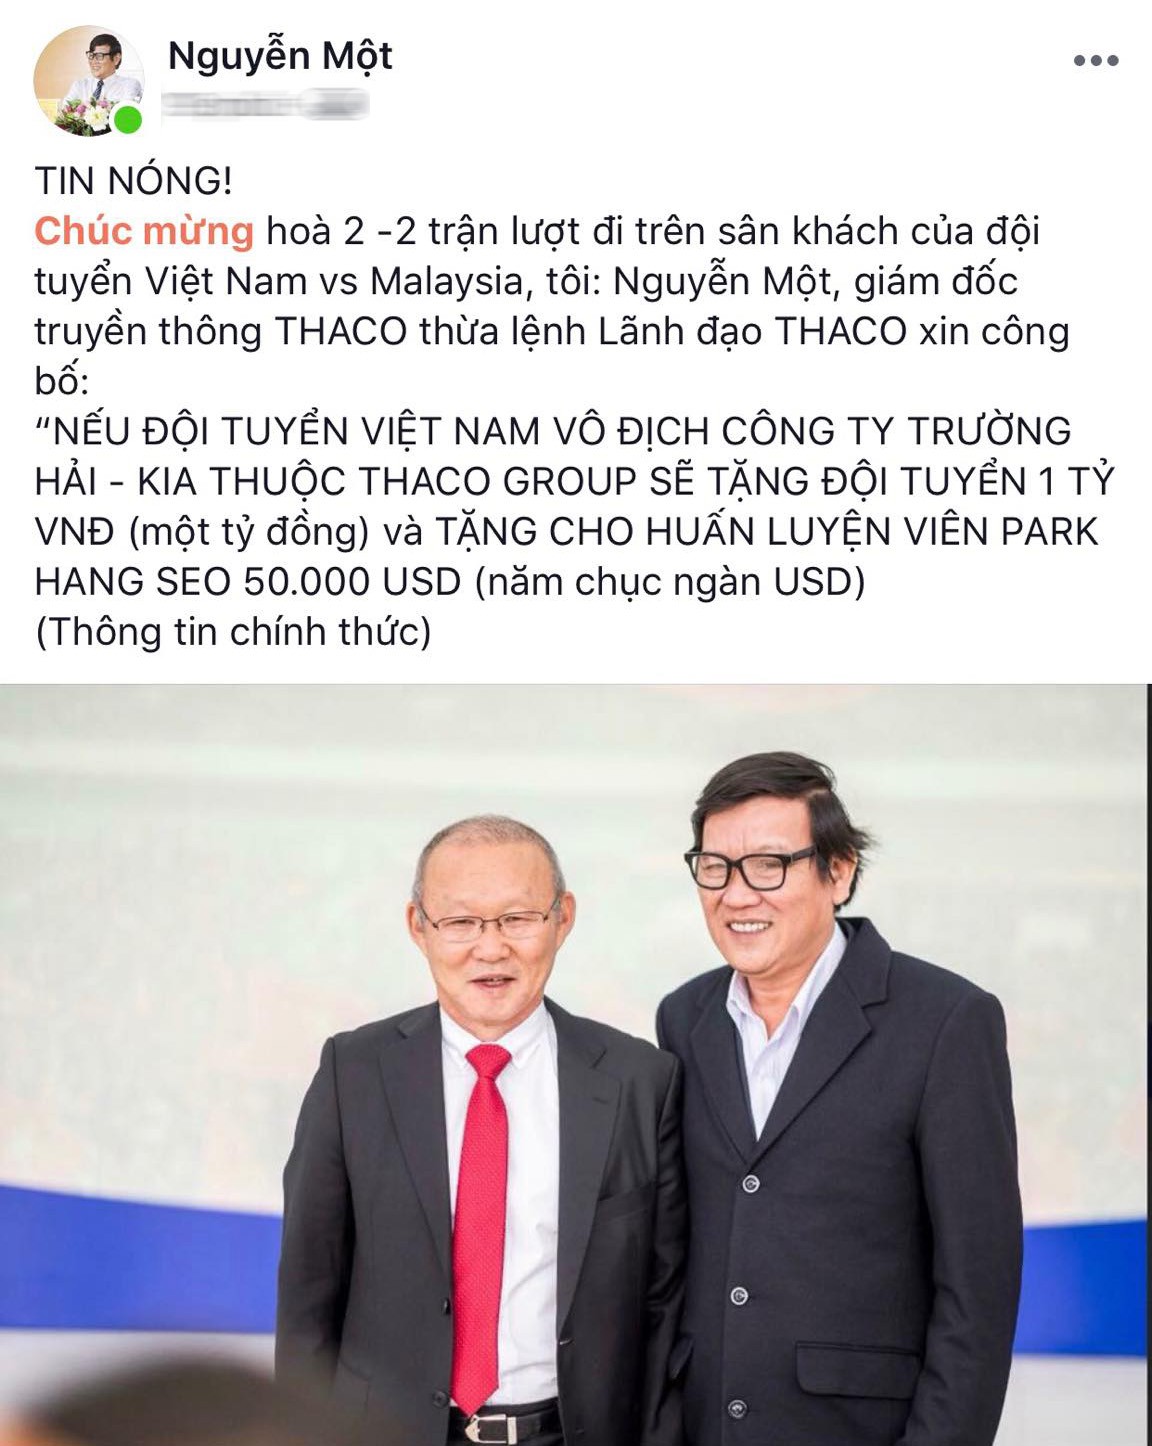 thaco, park hang seo, 1 tỷ đồng